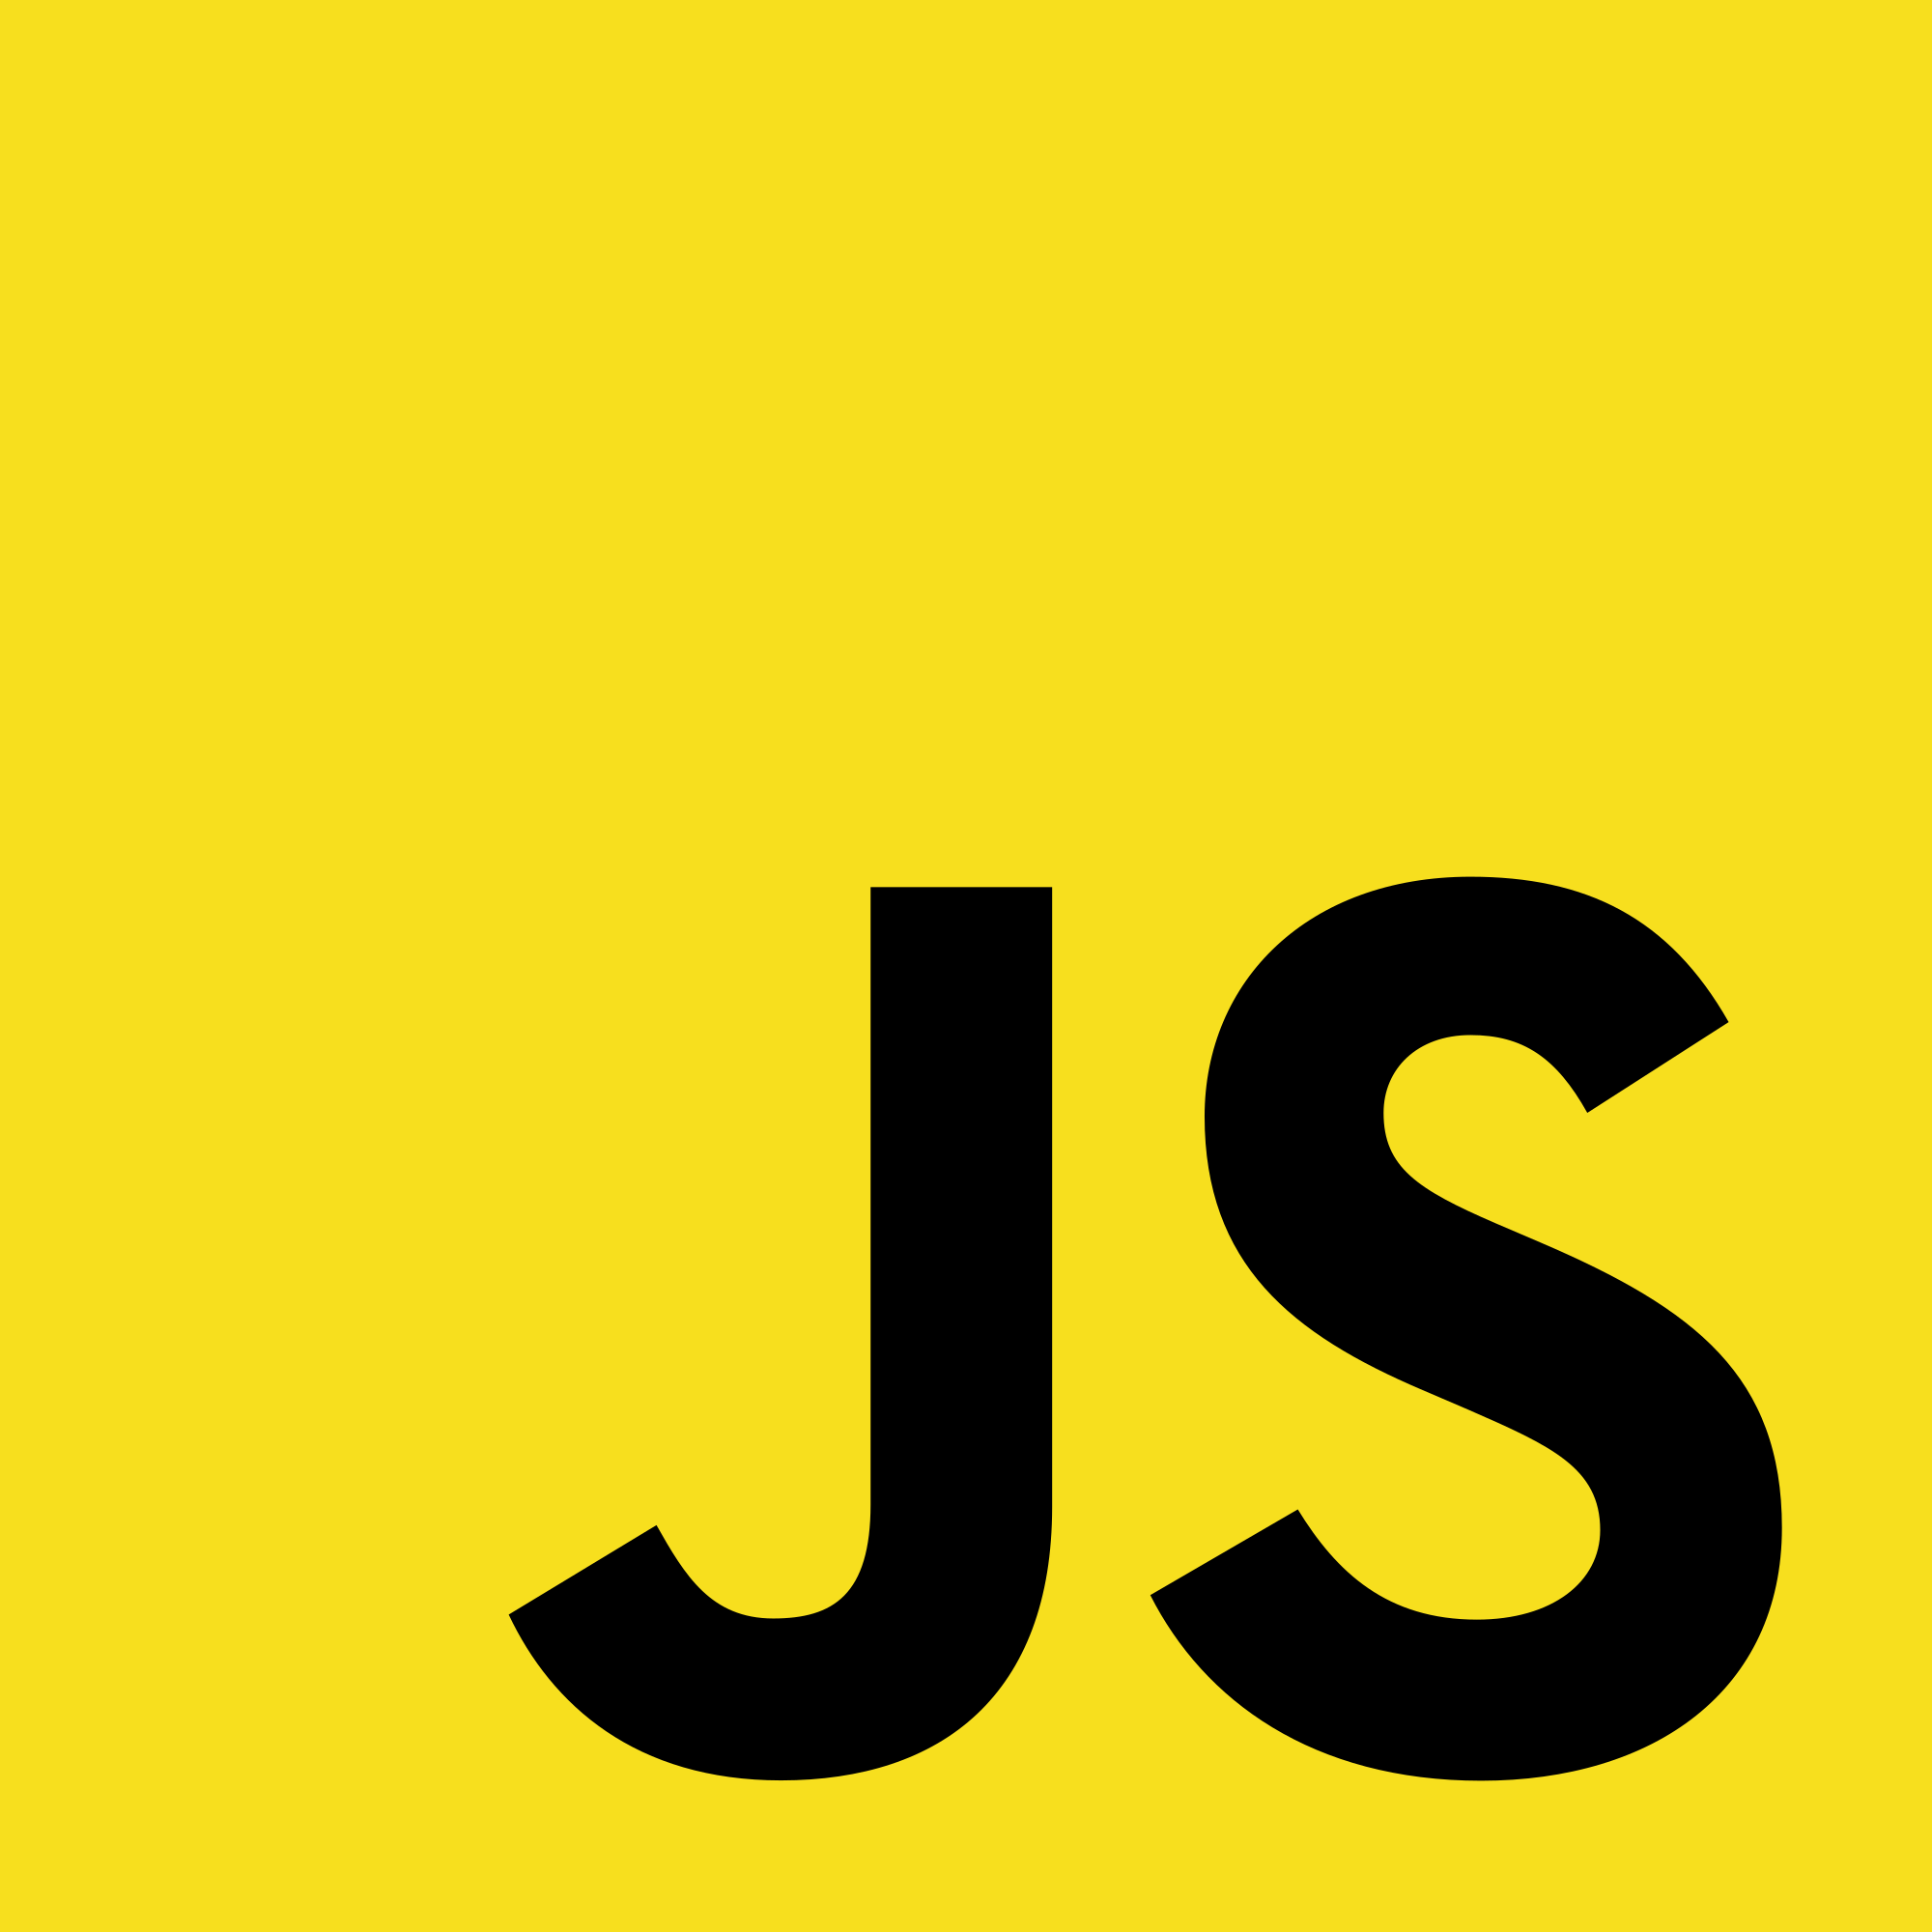 javascript-mini-projects